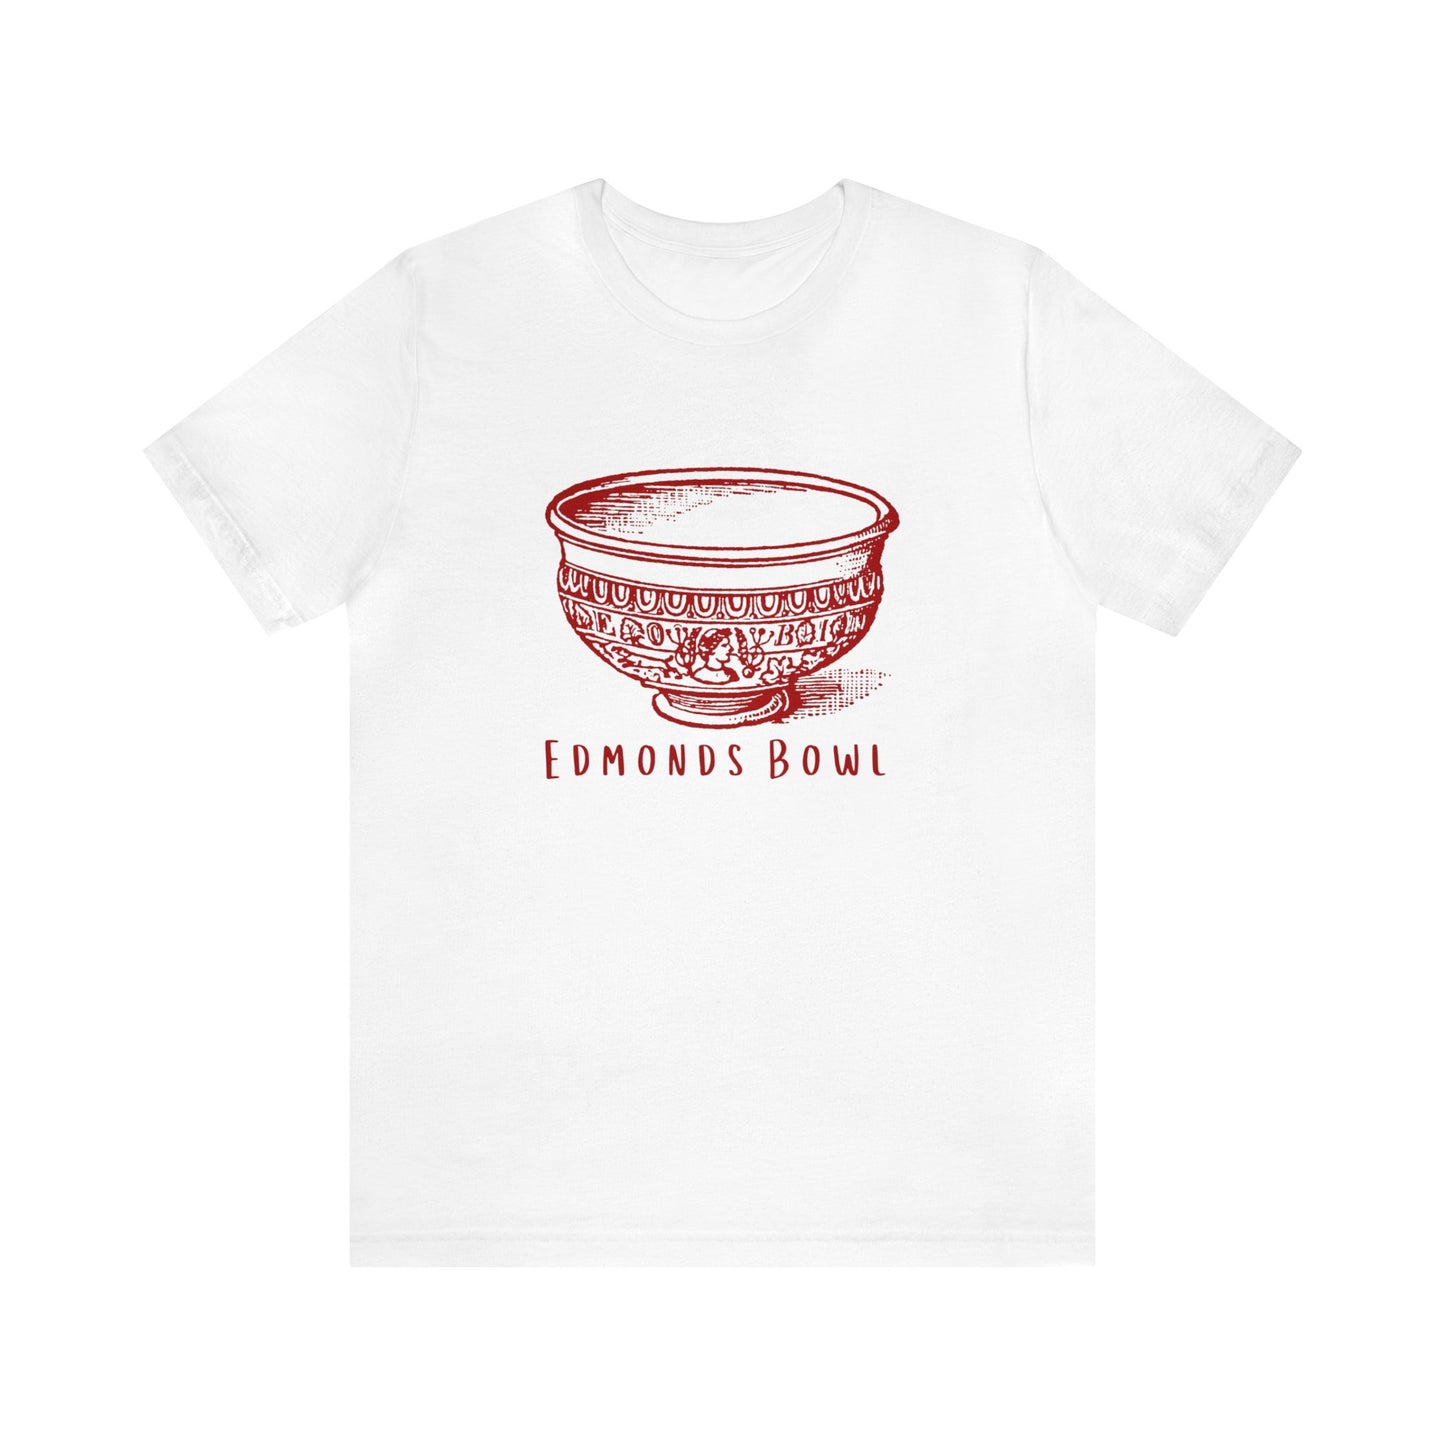 Edmonds Bowl T-shirt